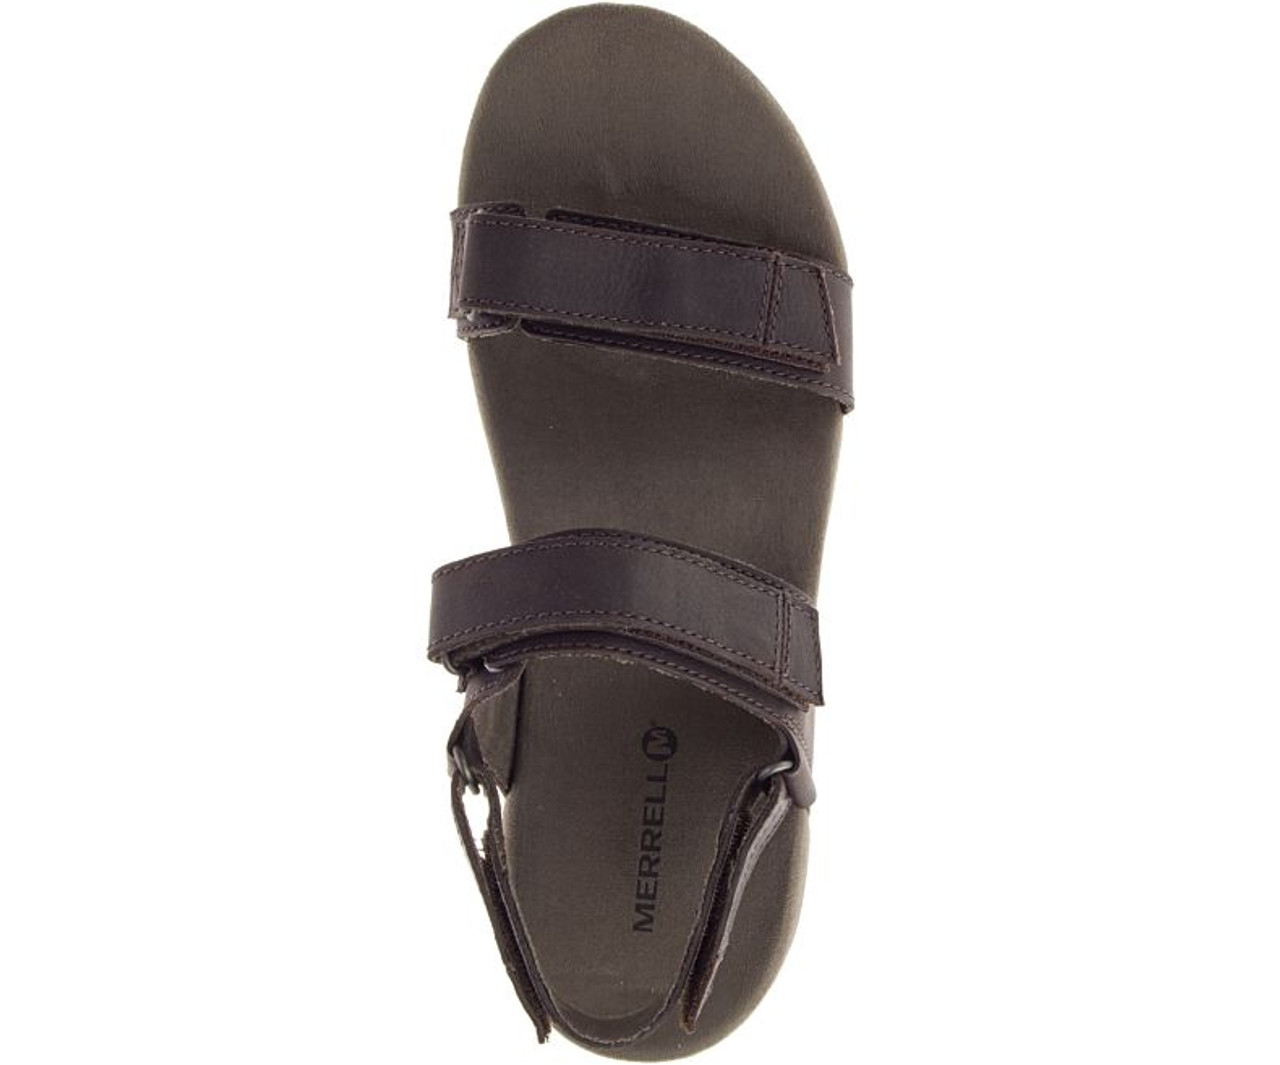 Men's Merrell Sandspur Backstrap Leather Sandal - Herbert's Boots and ...